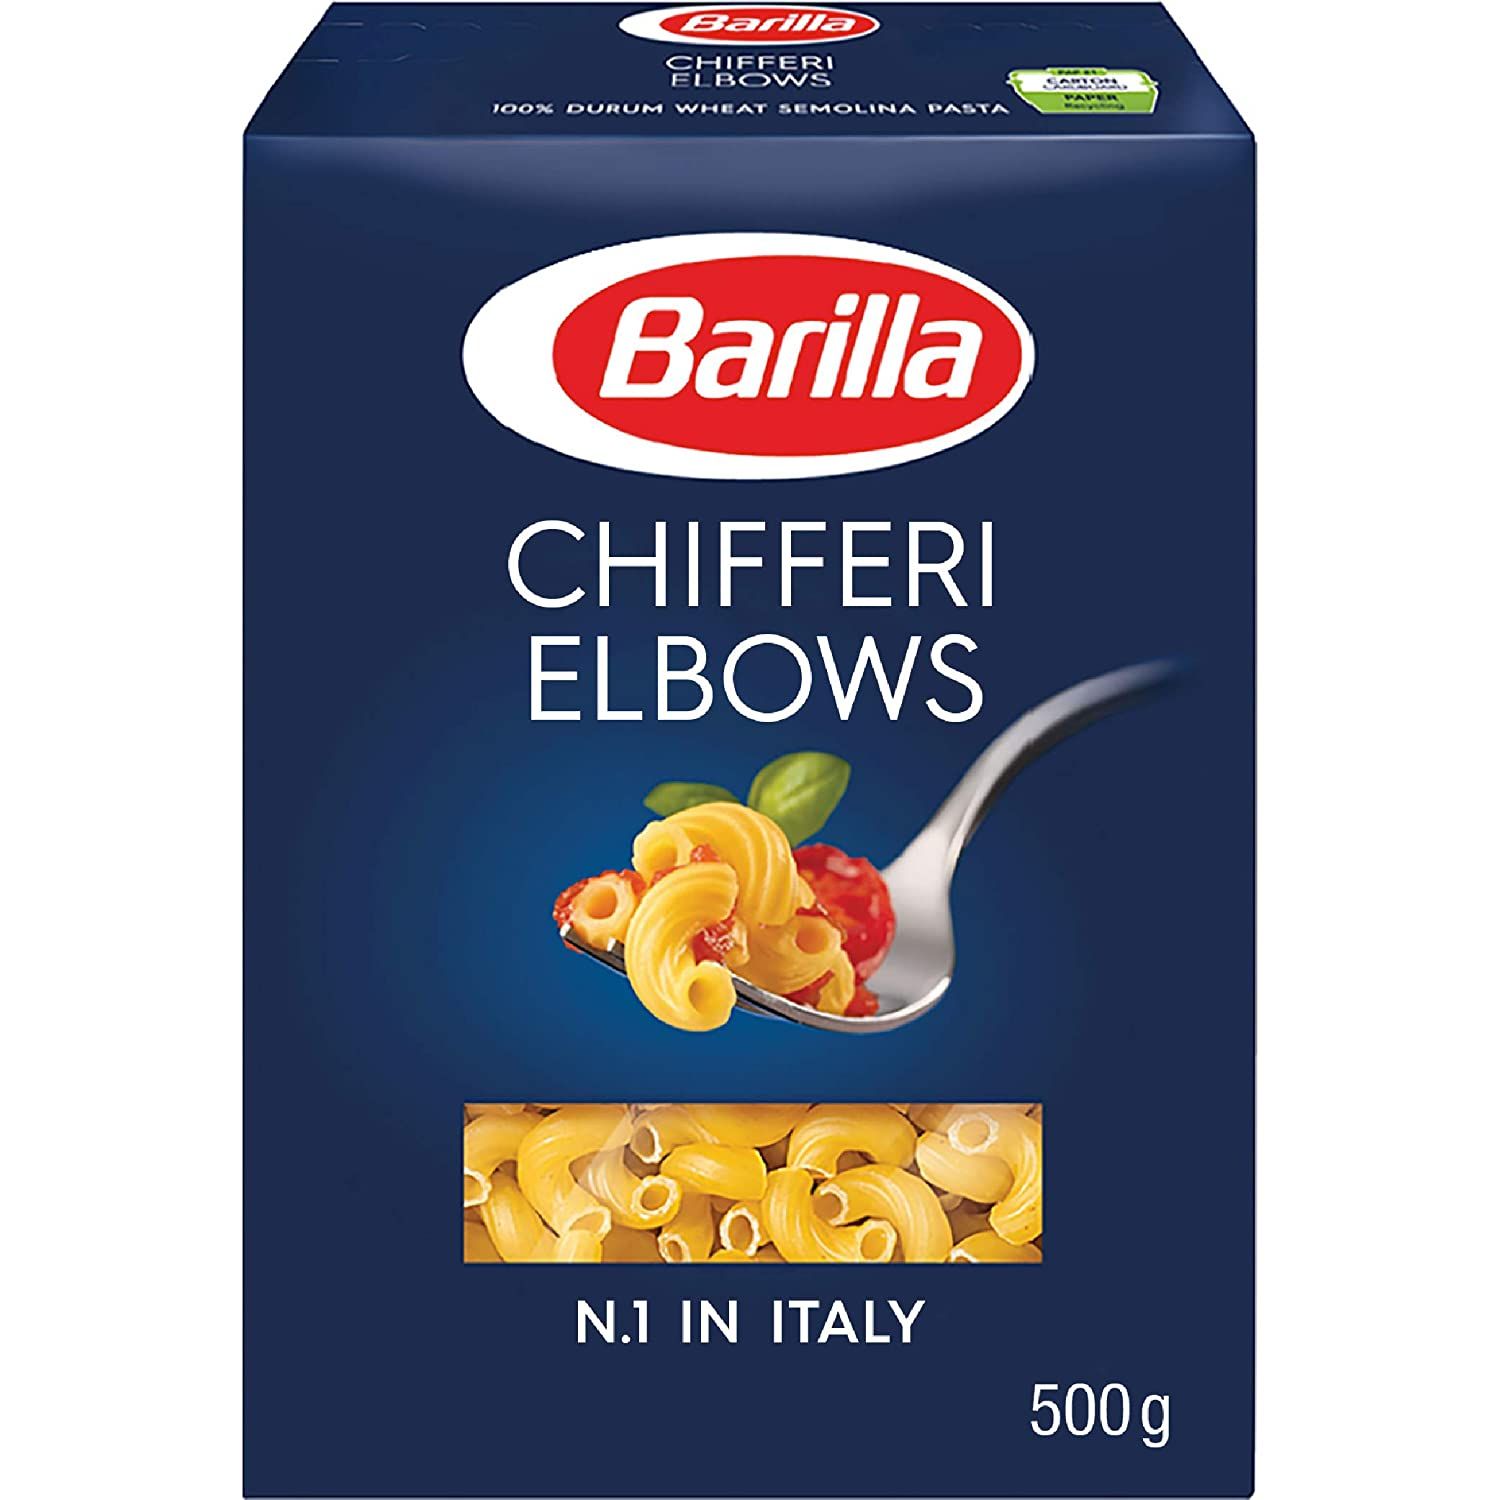 Barilla Pasta Chifferi Elbows Durum Wheat Image